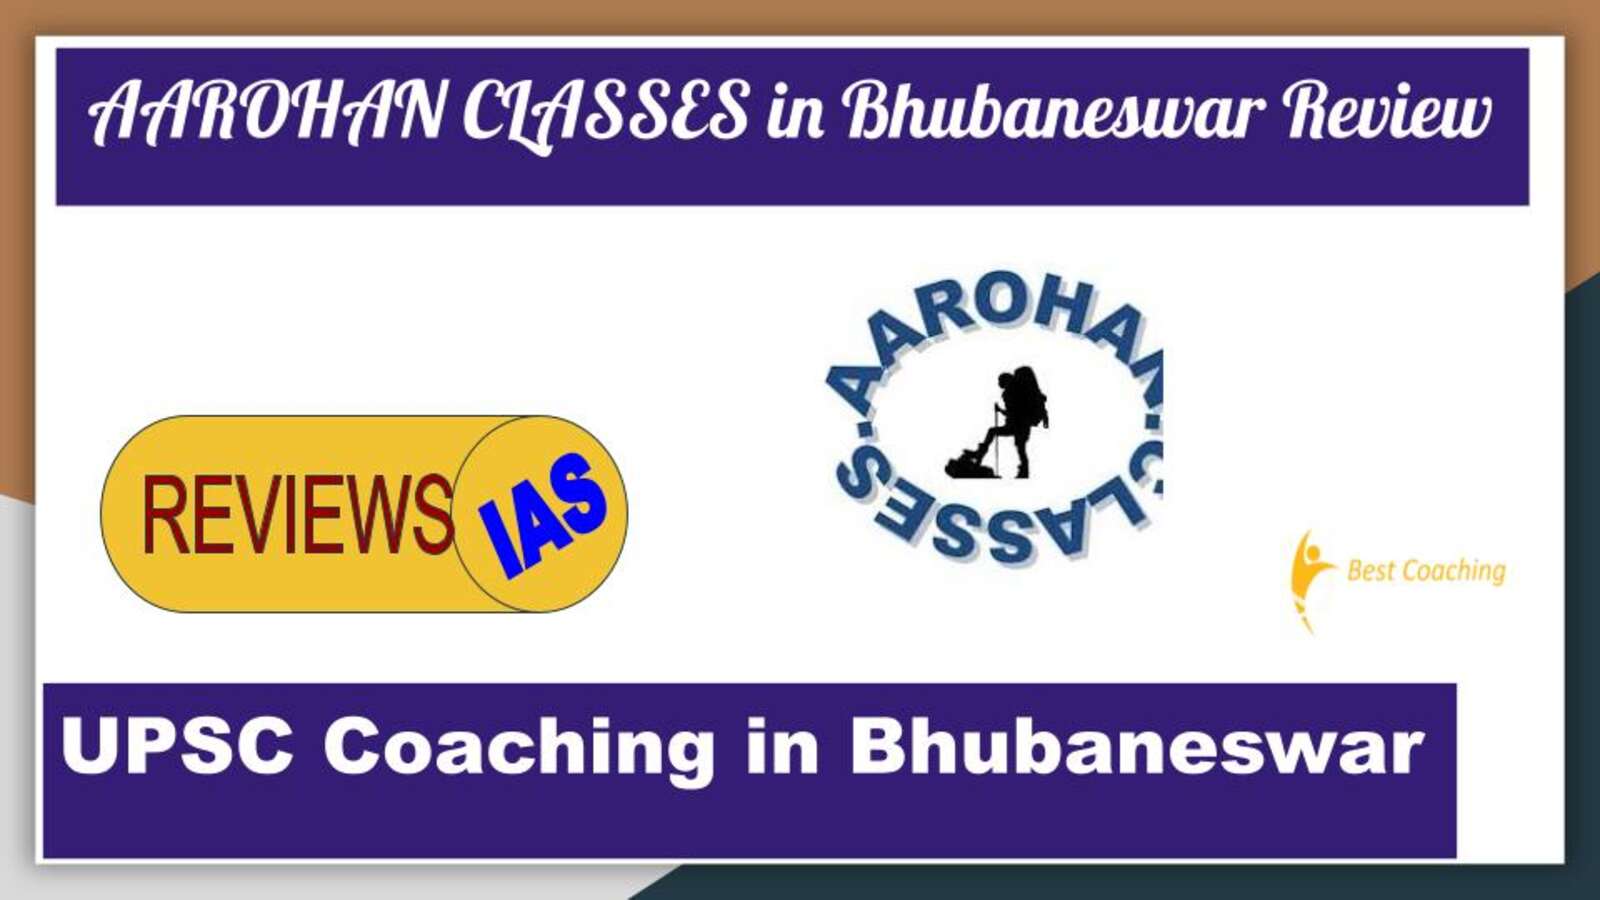 Aarohan Classes in Bhubaneswar